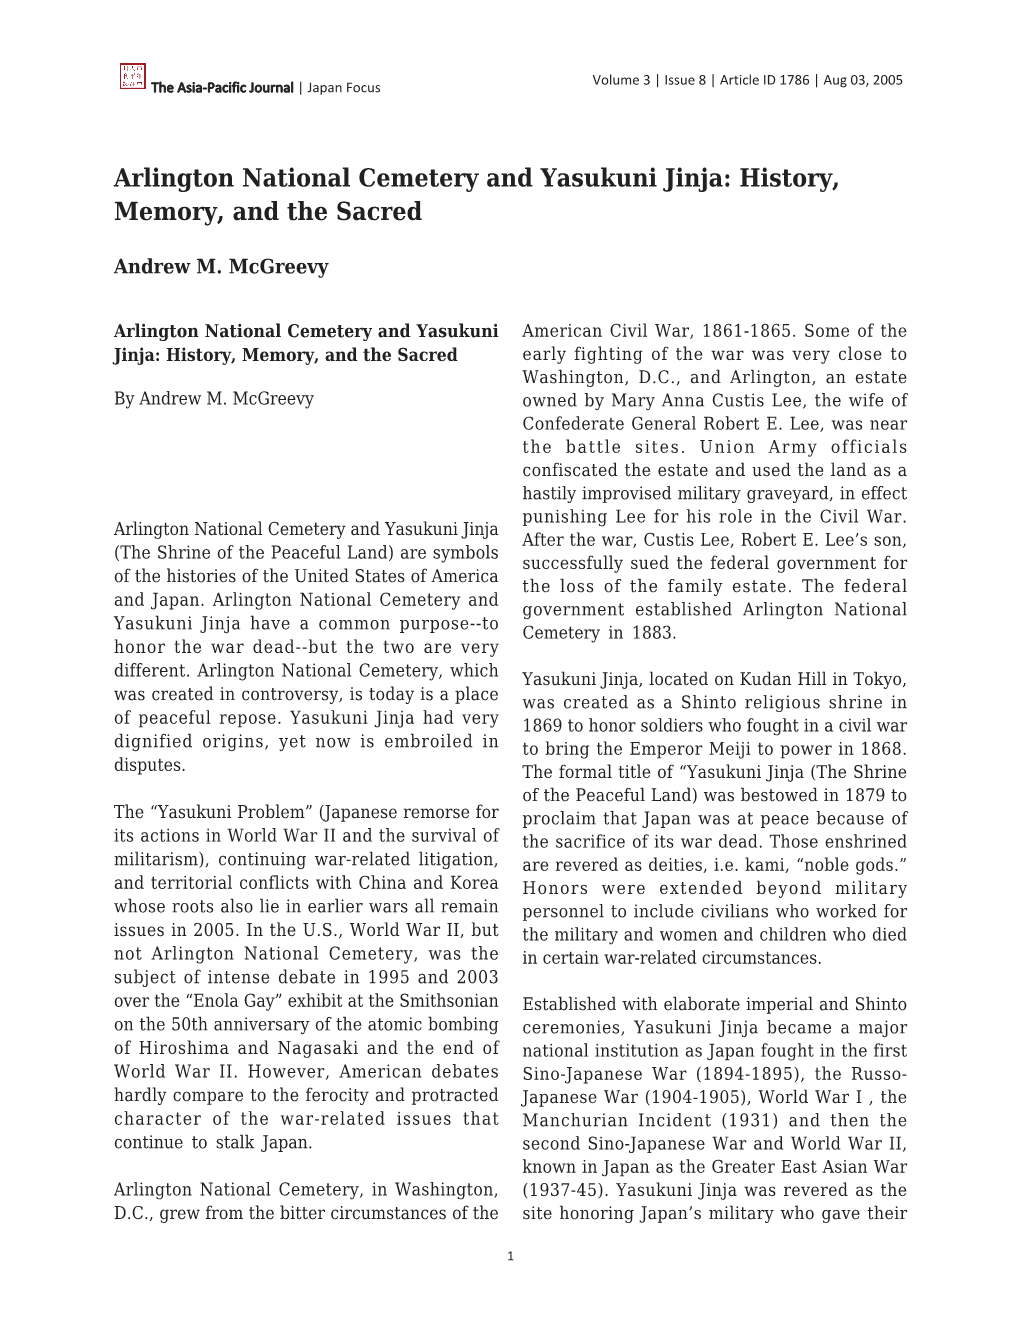 Arlington National Cemetery and Yasukuni Jinja: History, Memory, and the Sacred